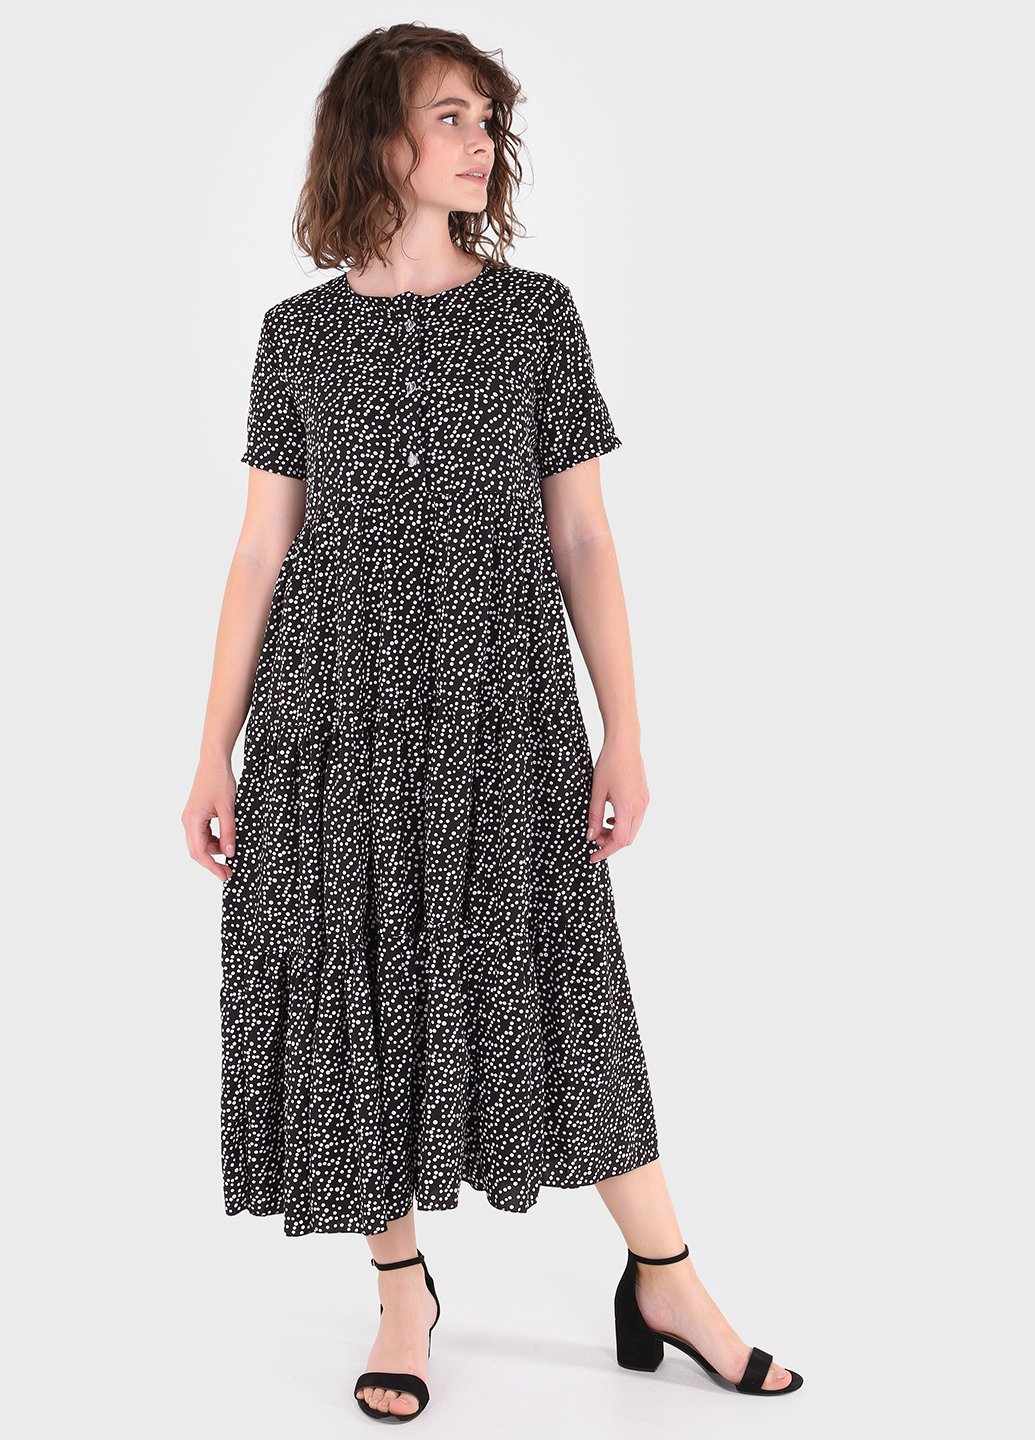 Купить Летнее хлопковое платье черного цвета Merlini Горошек 700000020, размер 42-44 в интернет-магазине